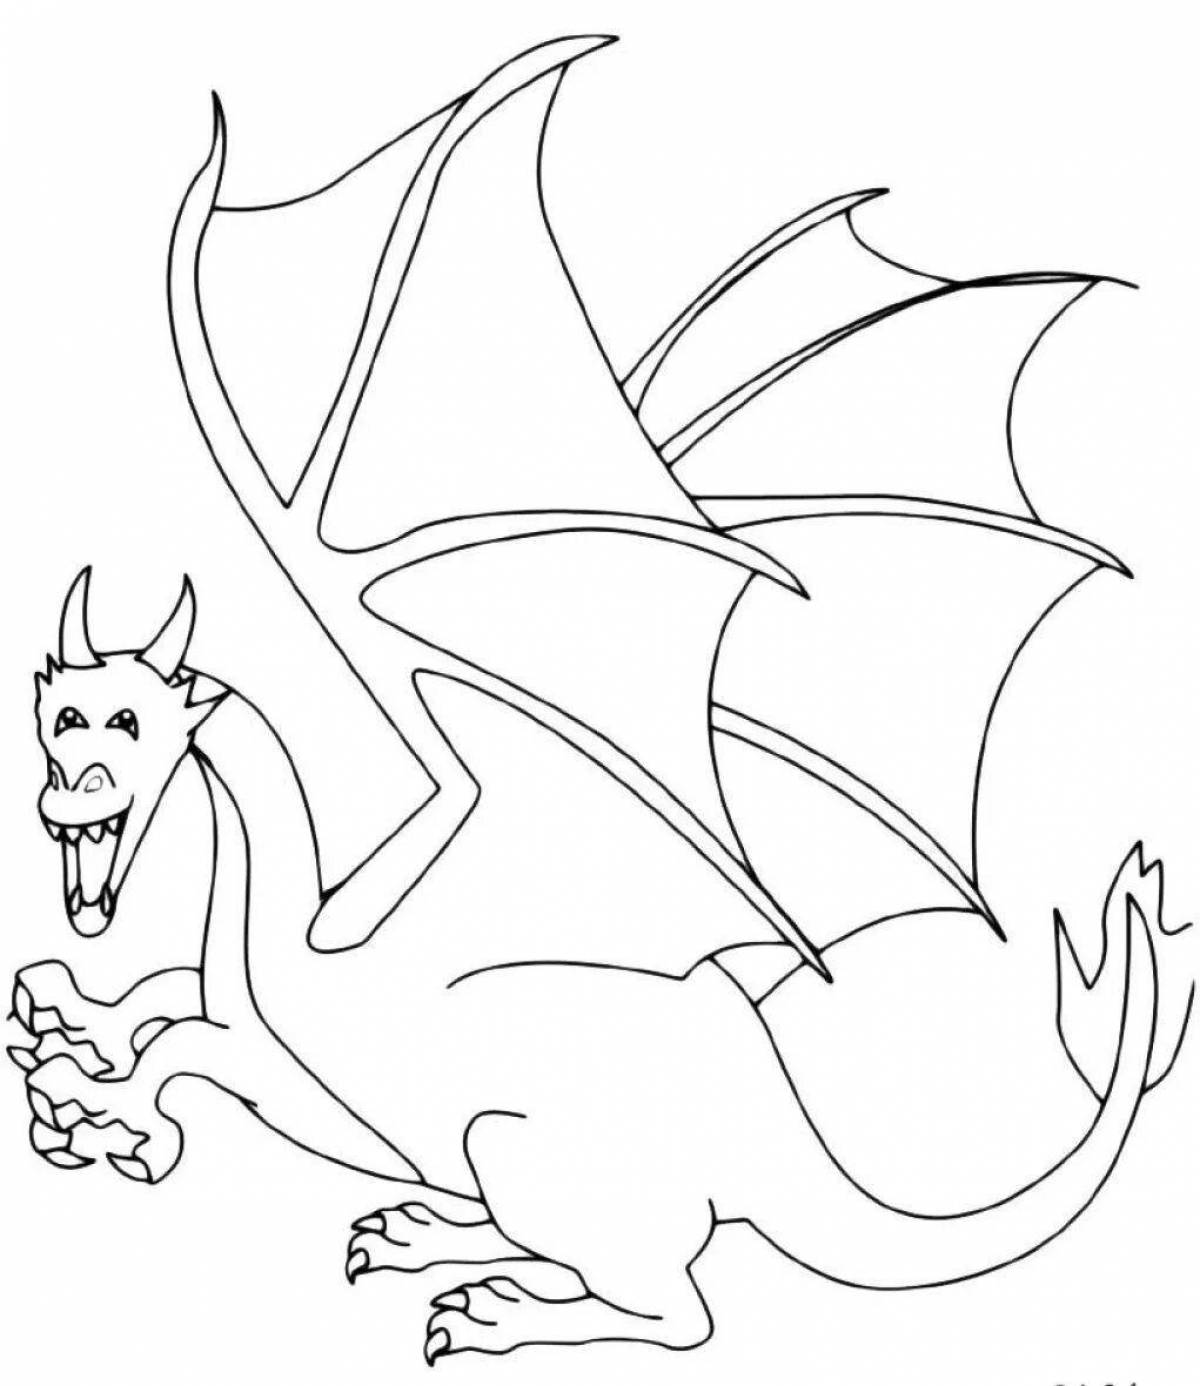 Цветная раскраска «дракон» для детей